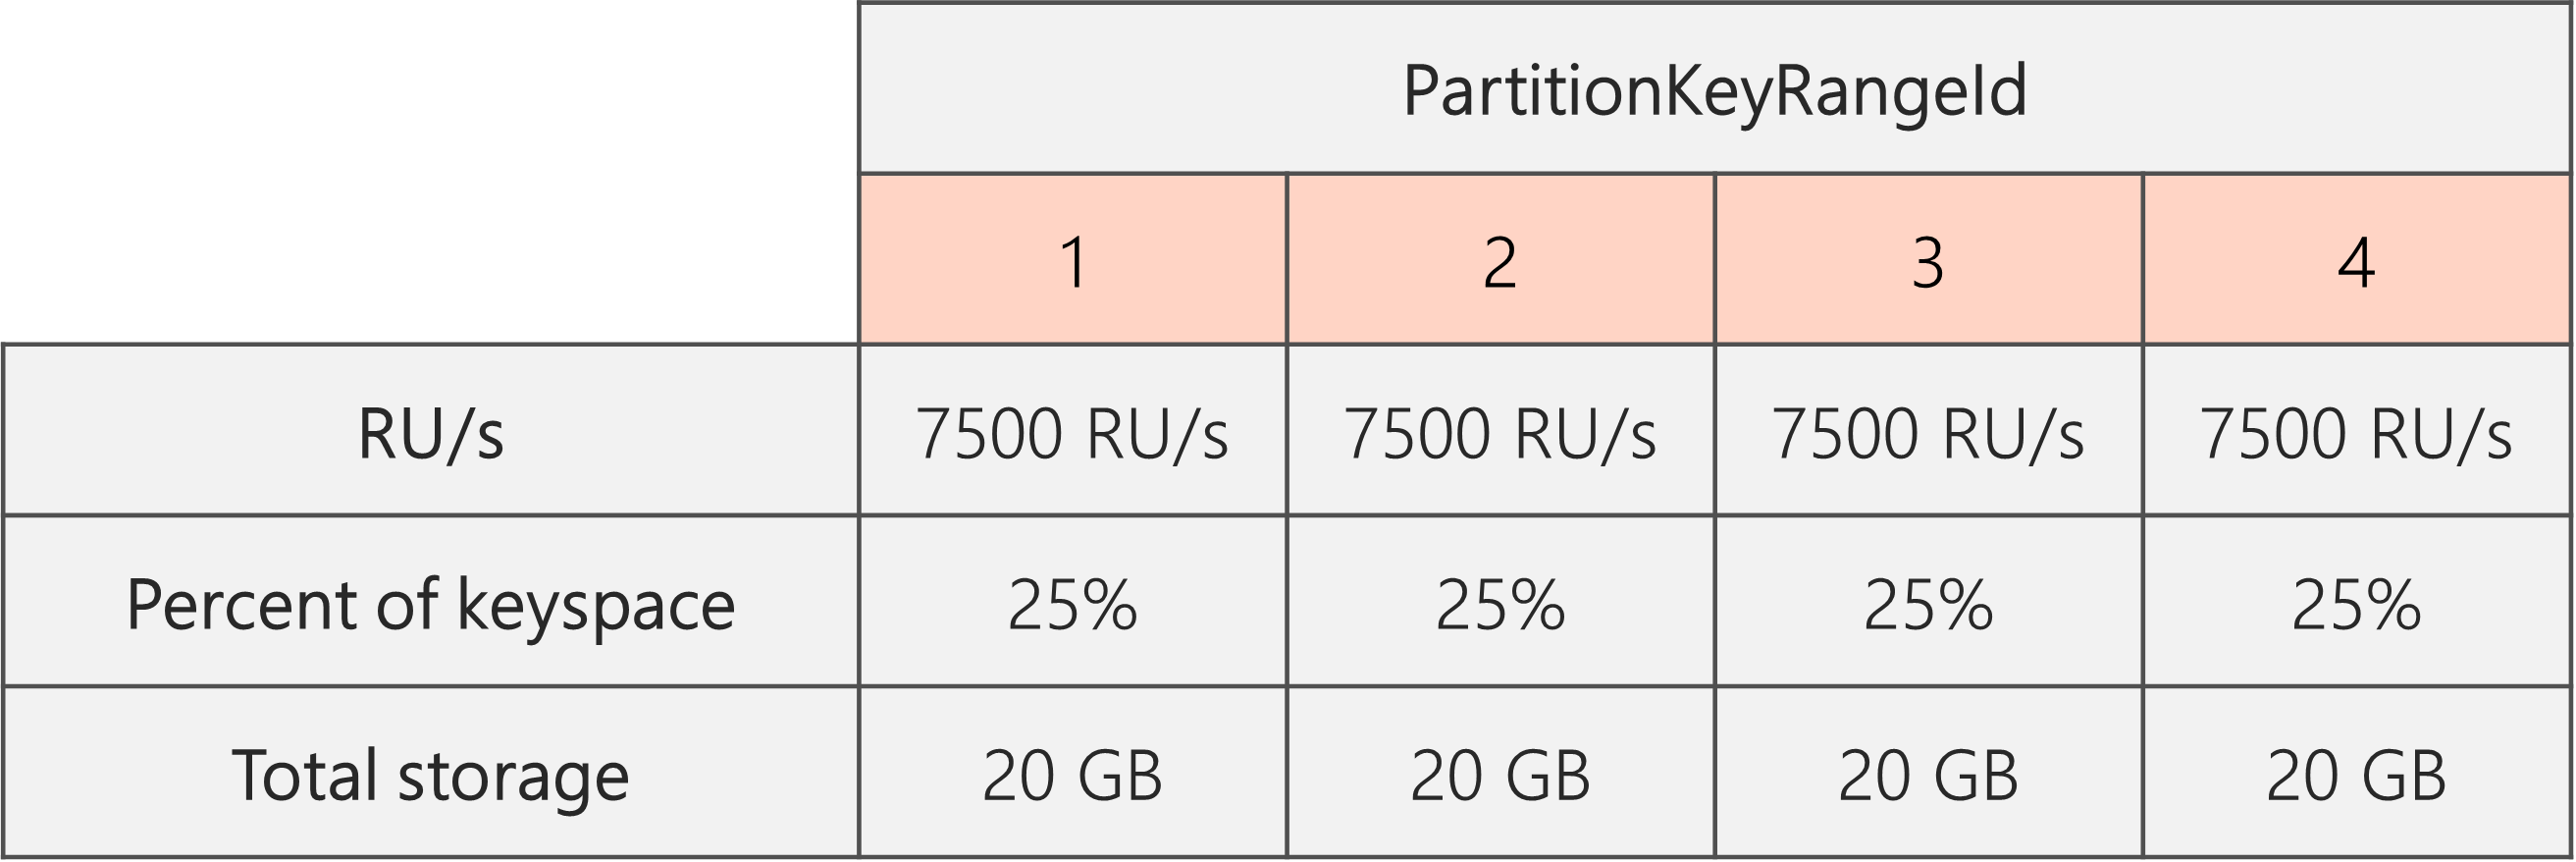 Nach Abschluss der Aufteilung und Reduzierung der RU/Sekunde von 40.000 auf 30.000 ergeben sich 4 PartitionKeyRangeIDs mit jeweils 7.500 RU/Sek. und 25 % des gesamten Keyspace (20 GB).